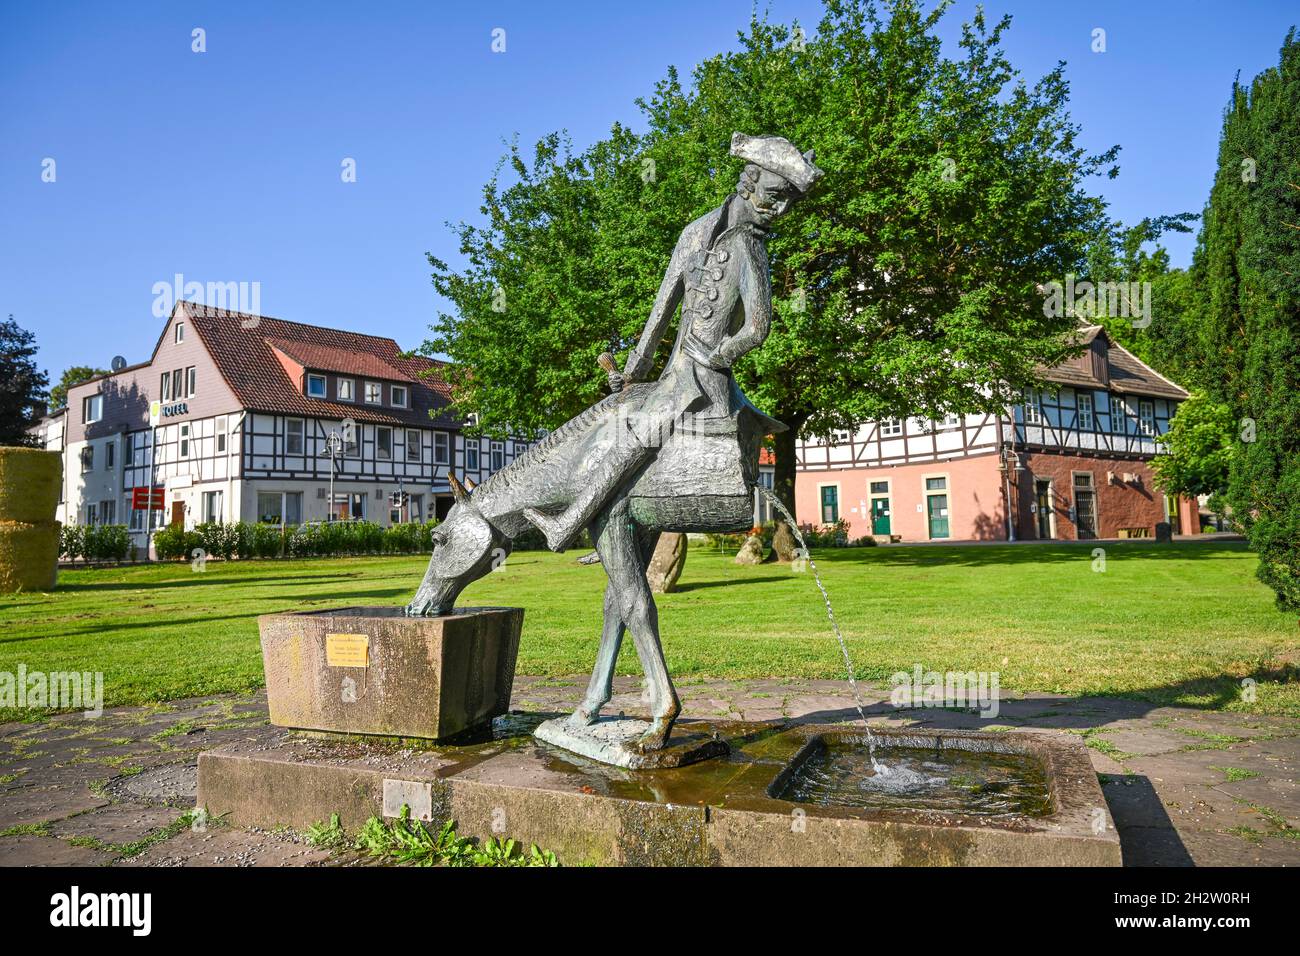 Münchhausenbrunnen, 'Das halbe Pferd', Baron von Münchhausen, Münchhausenstadt Bodenwerder, Niedersachsen,Allemagne Banque D'Images